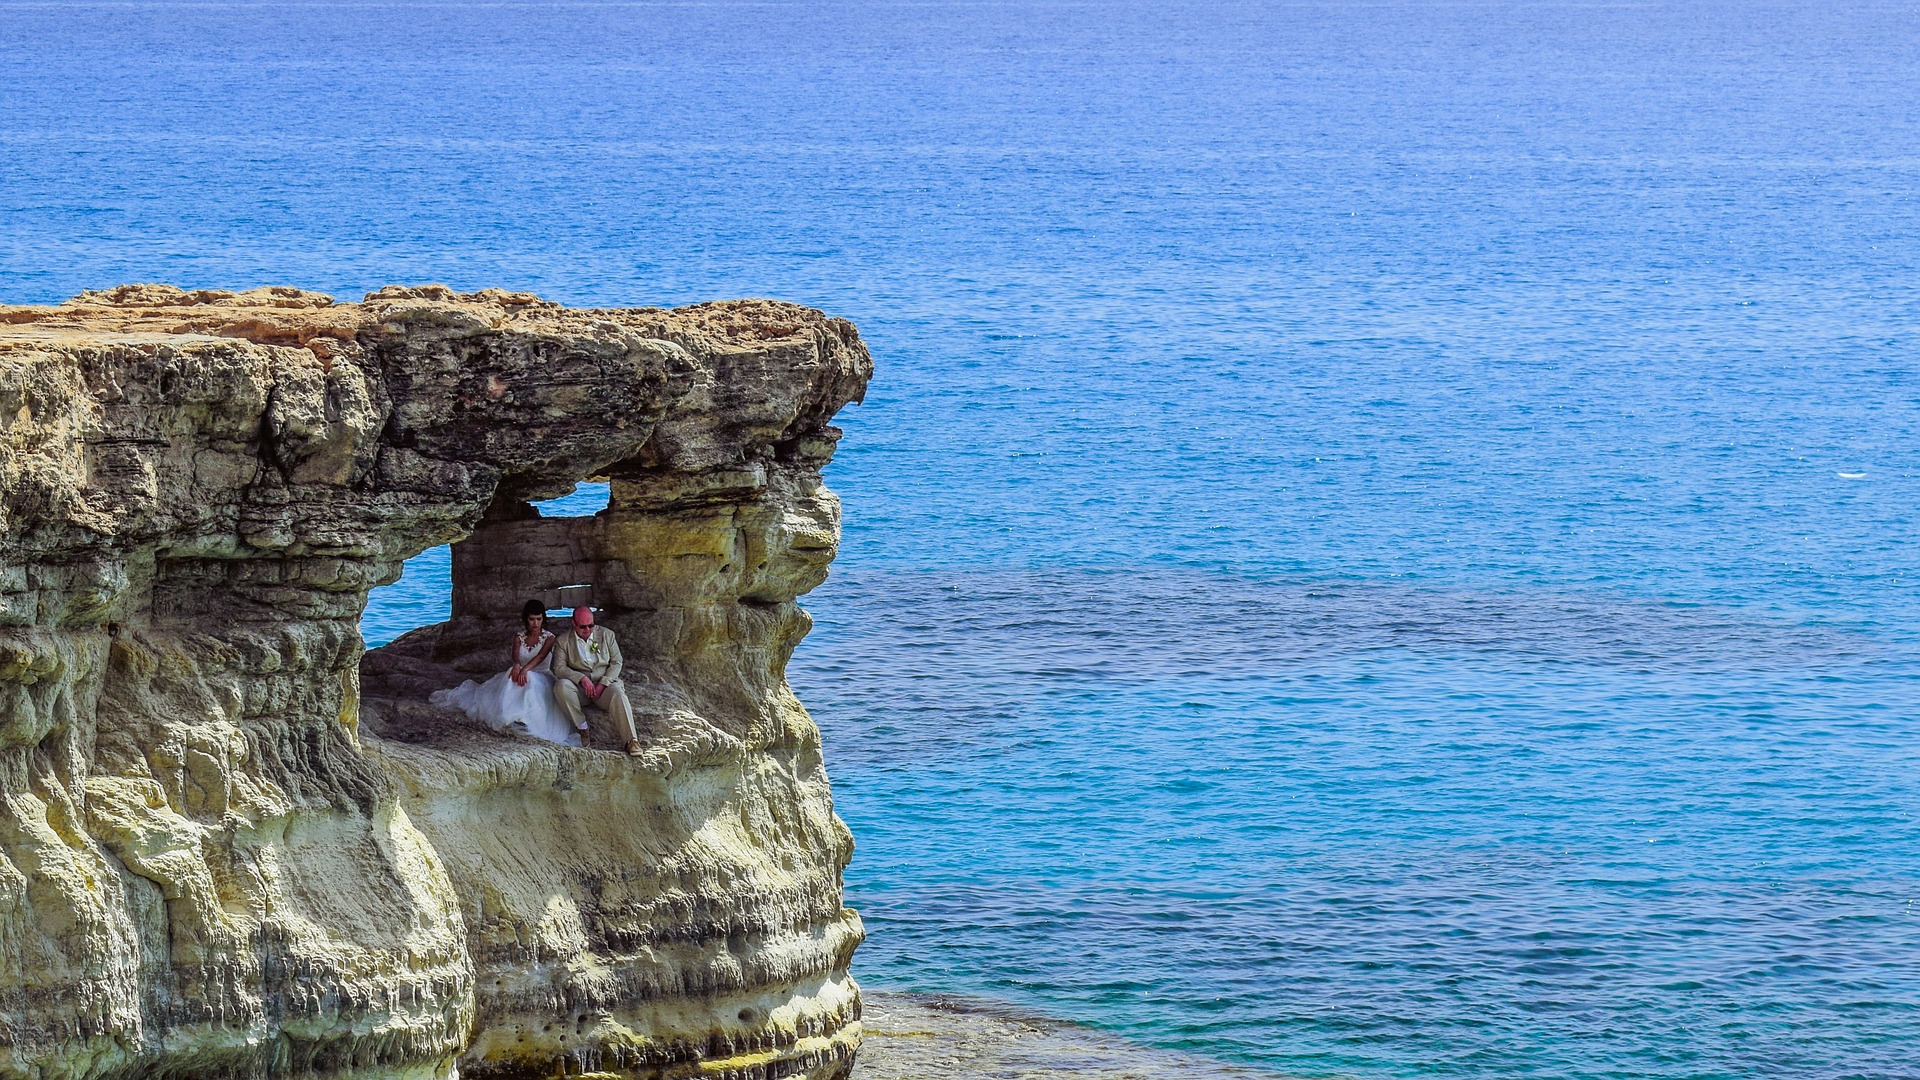 Couples in rocky bluff overlooking ocean